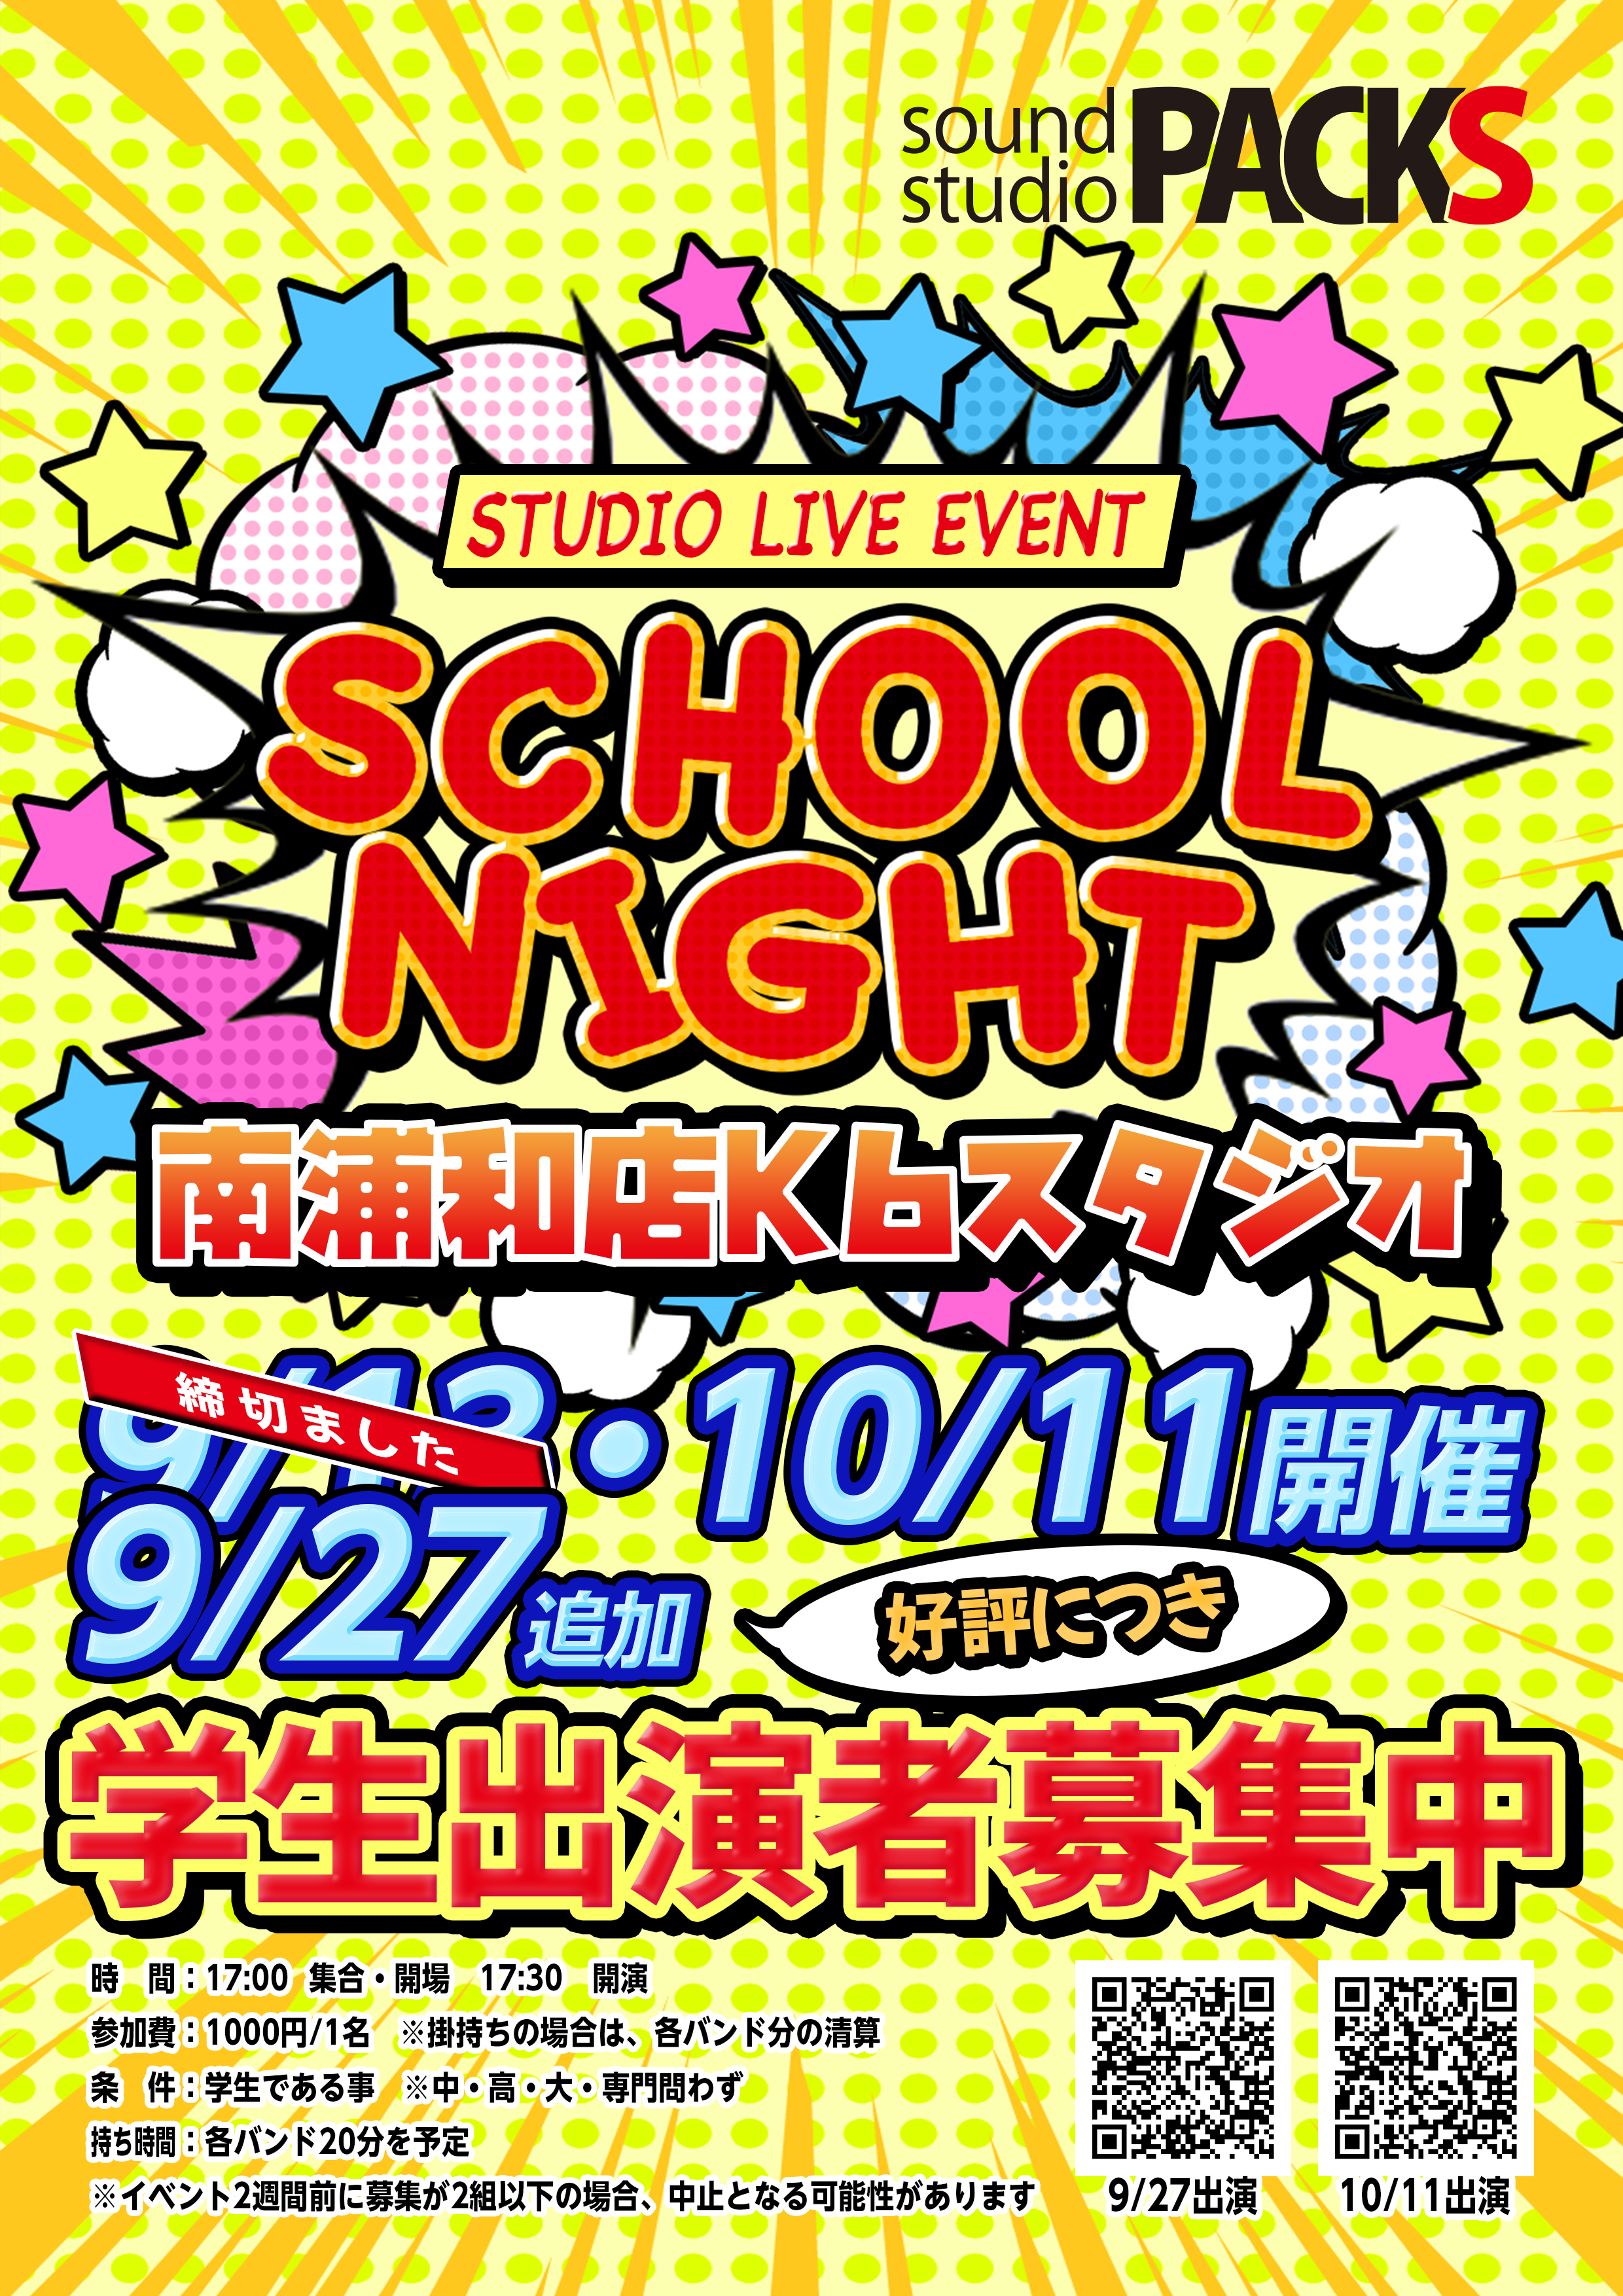 学生出演者募集 9/27 10/11 南浦和店企画 K6スタジオライブ「School Night 」